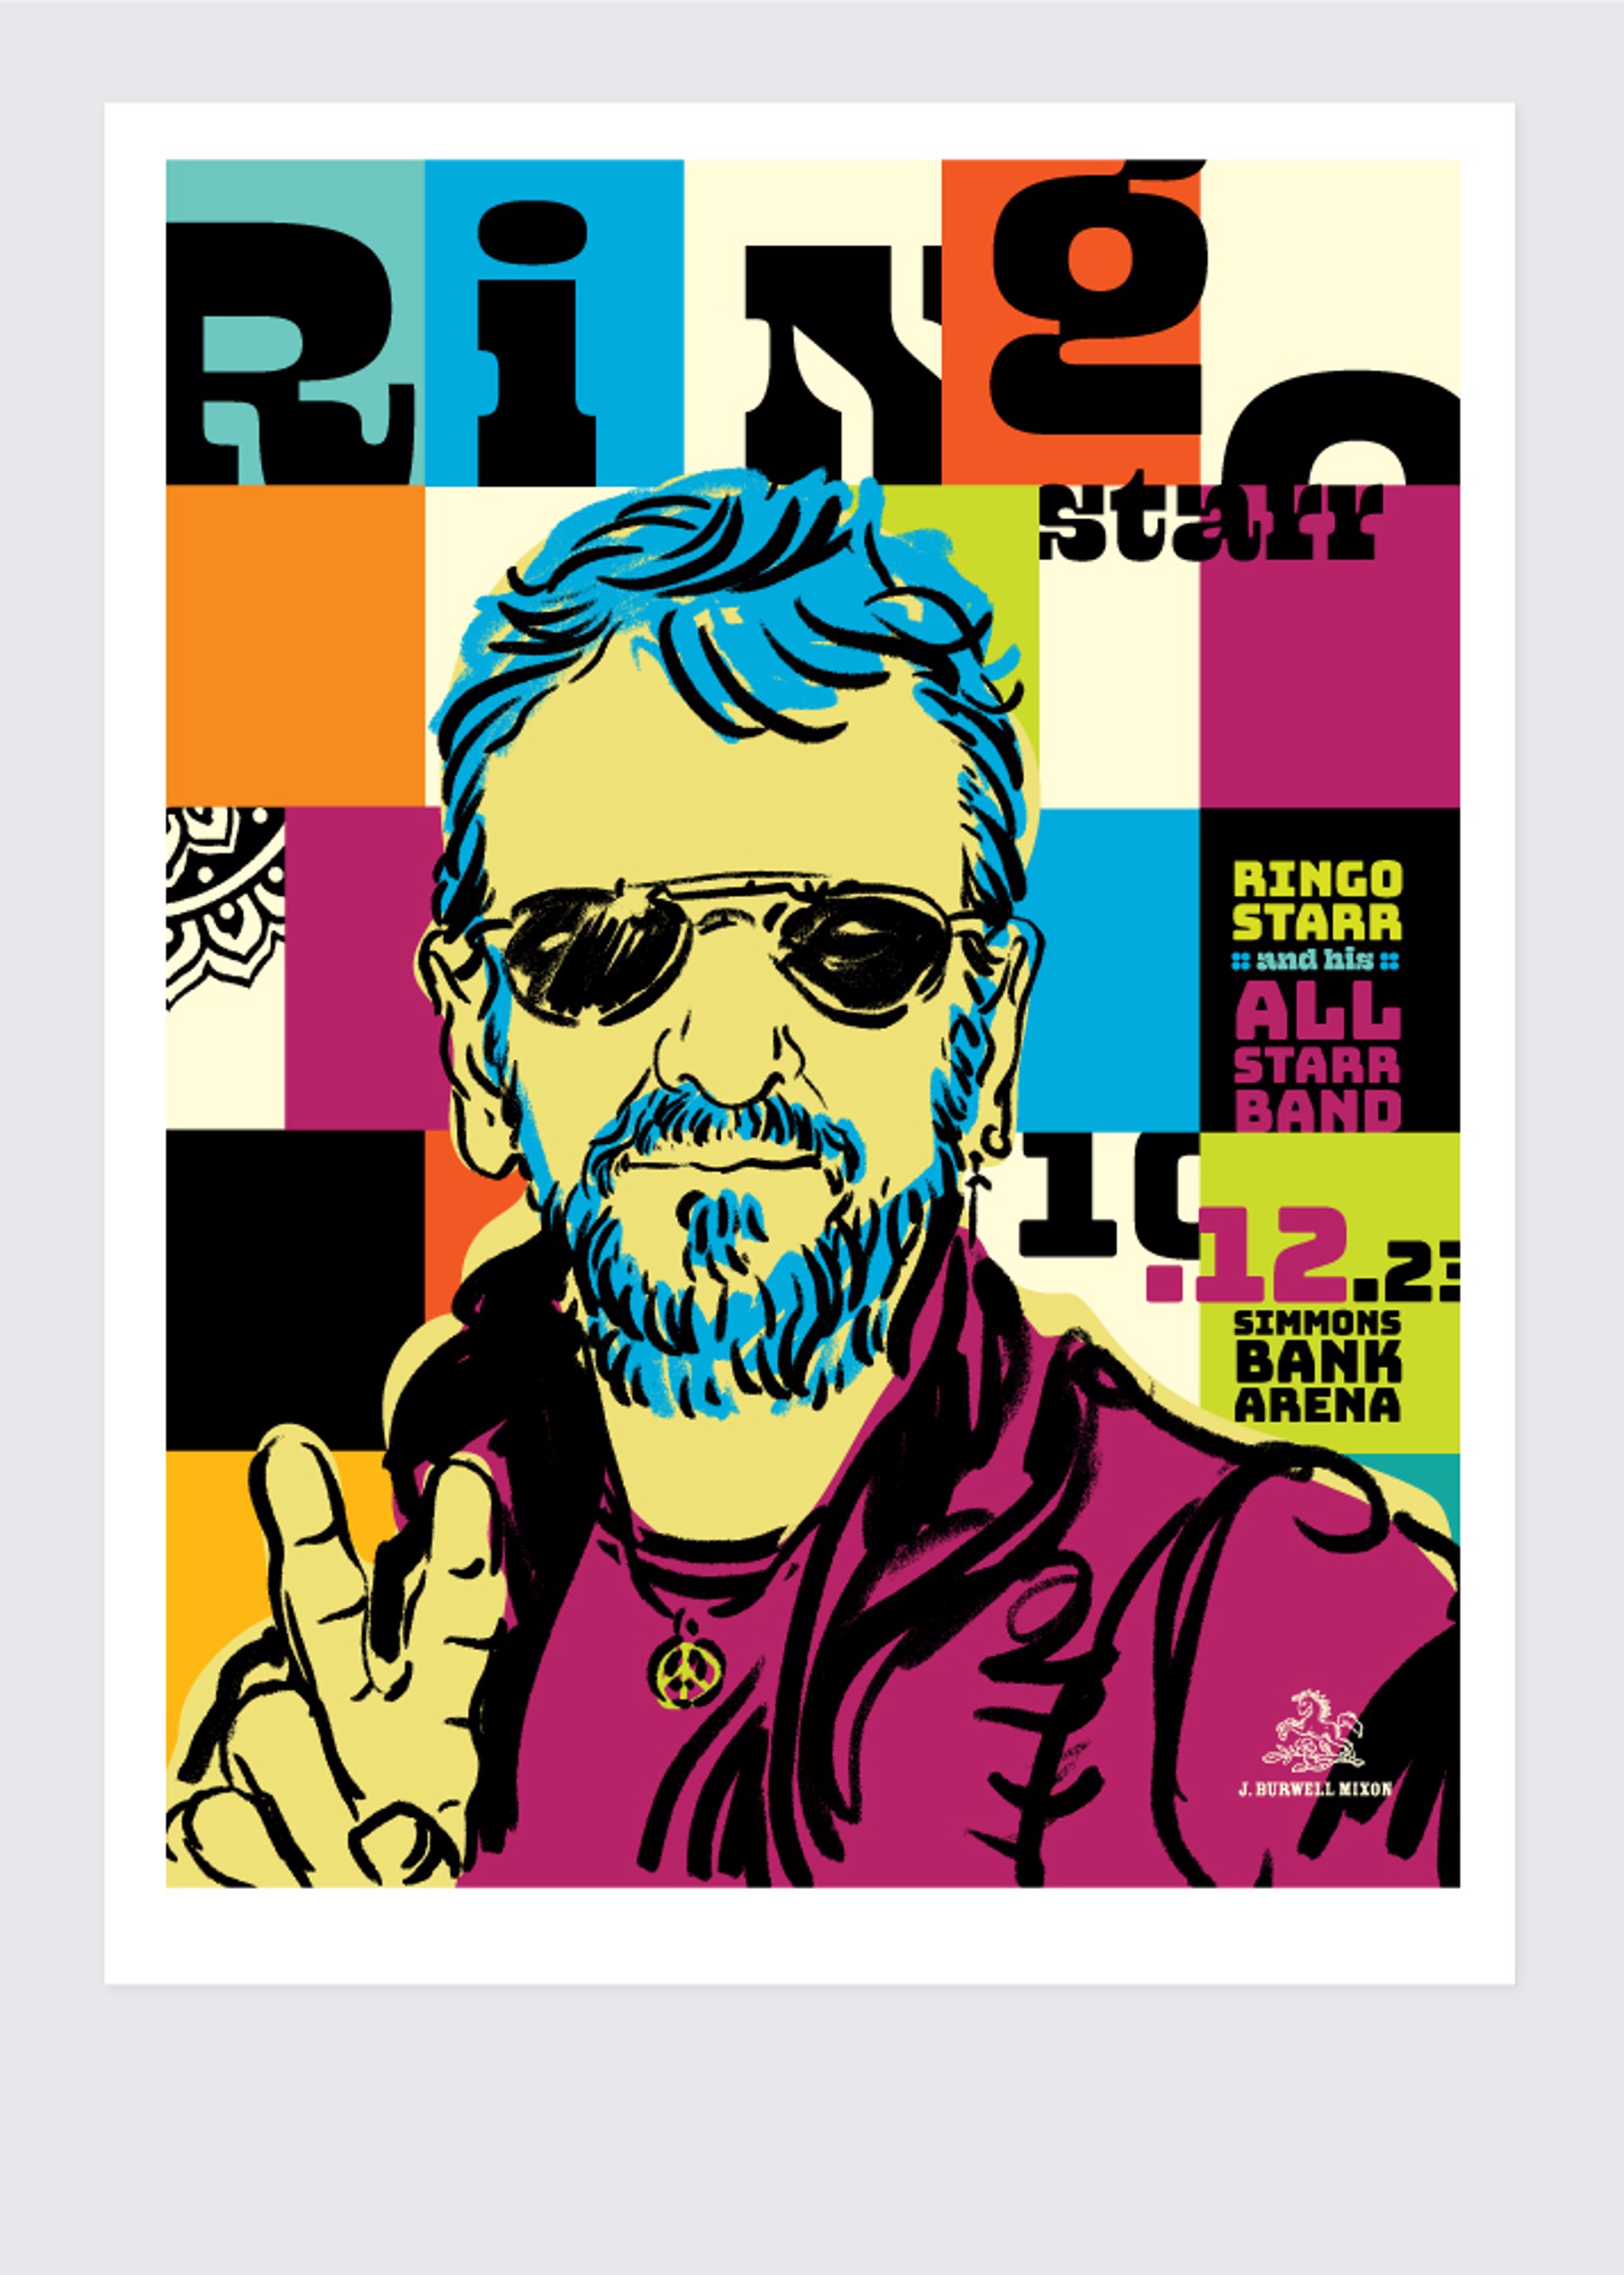 Ringo Starr Poster by Jamie Burwell Mixon